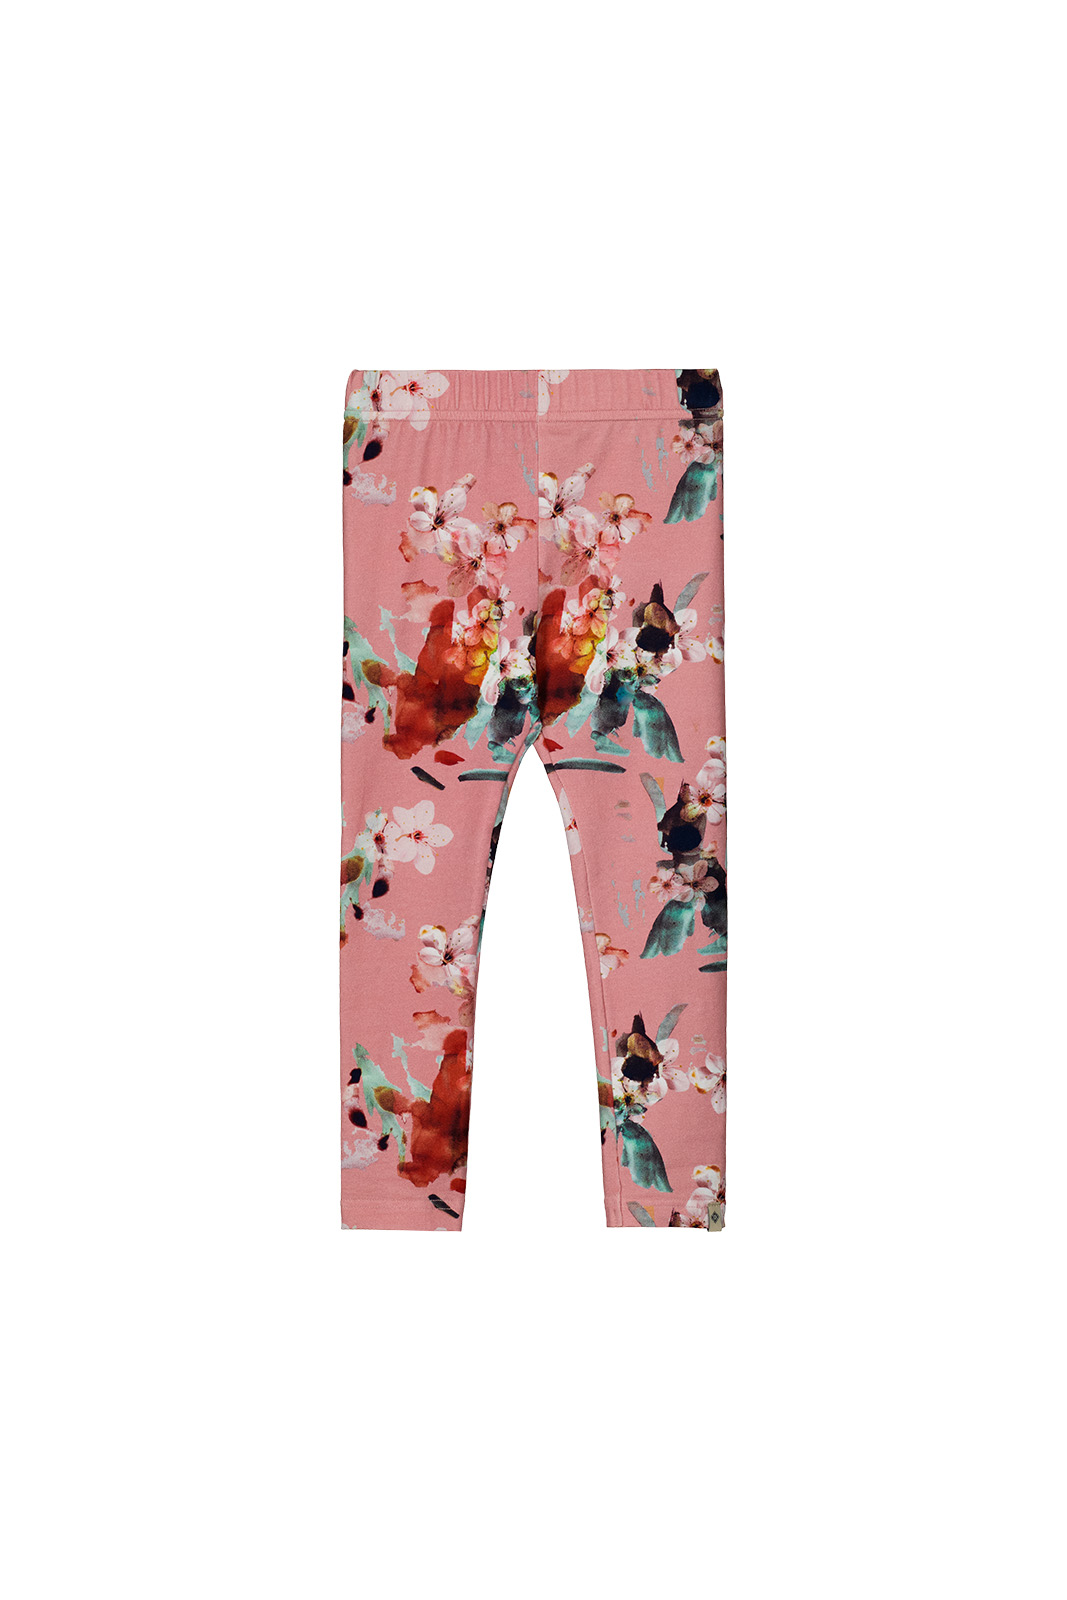 Kaiko - Leggings - Pink Blossom 2